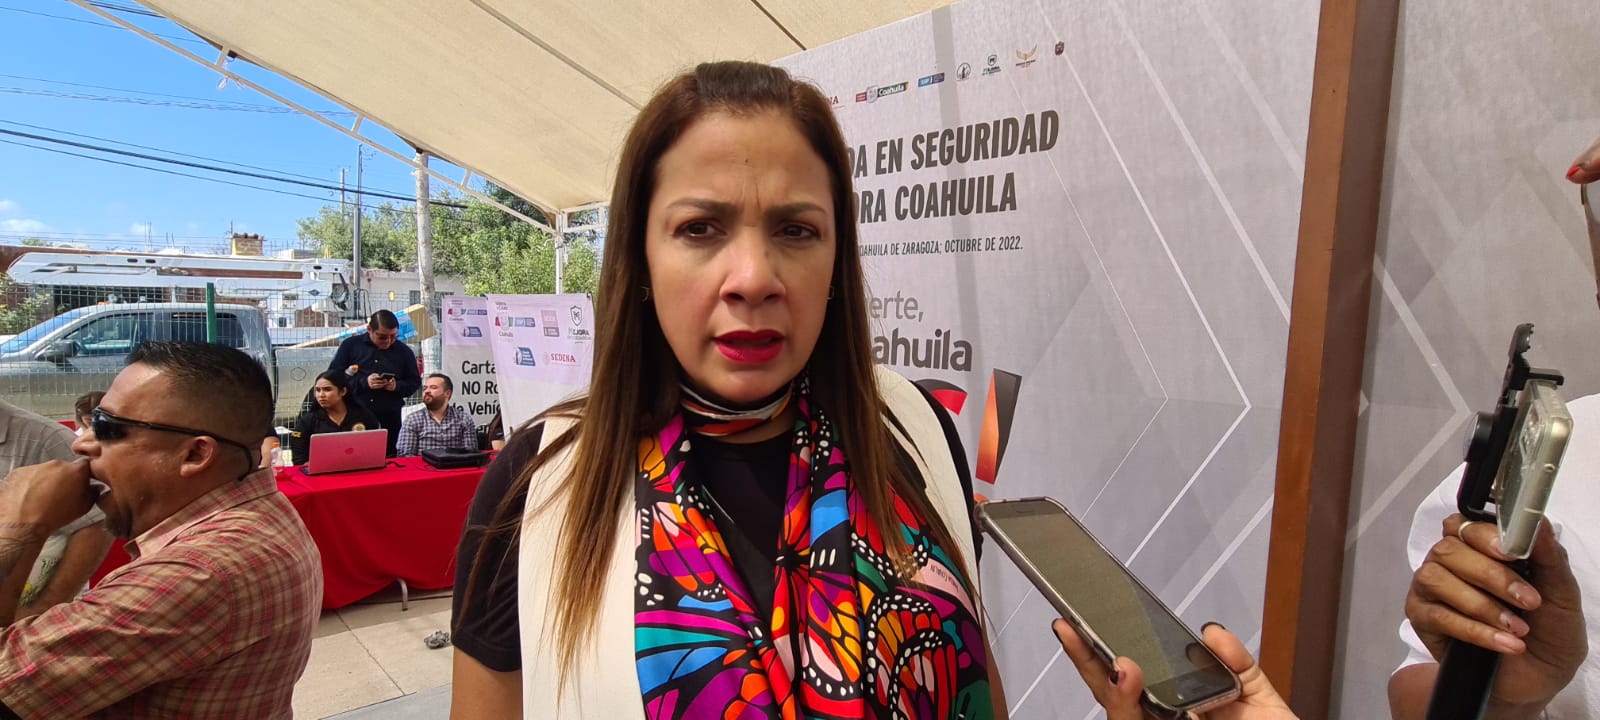 Sonia Villarreal Pérez, titular de la Secretaría de Seguridad Pública (SSP) del Estado de Coahuila. (Foto: RENÉ ARELLANO / EL SIGLO COAHUILA)